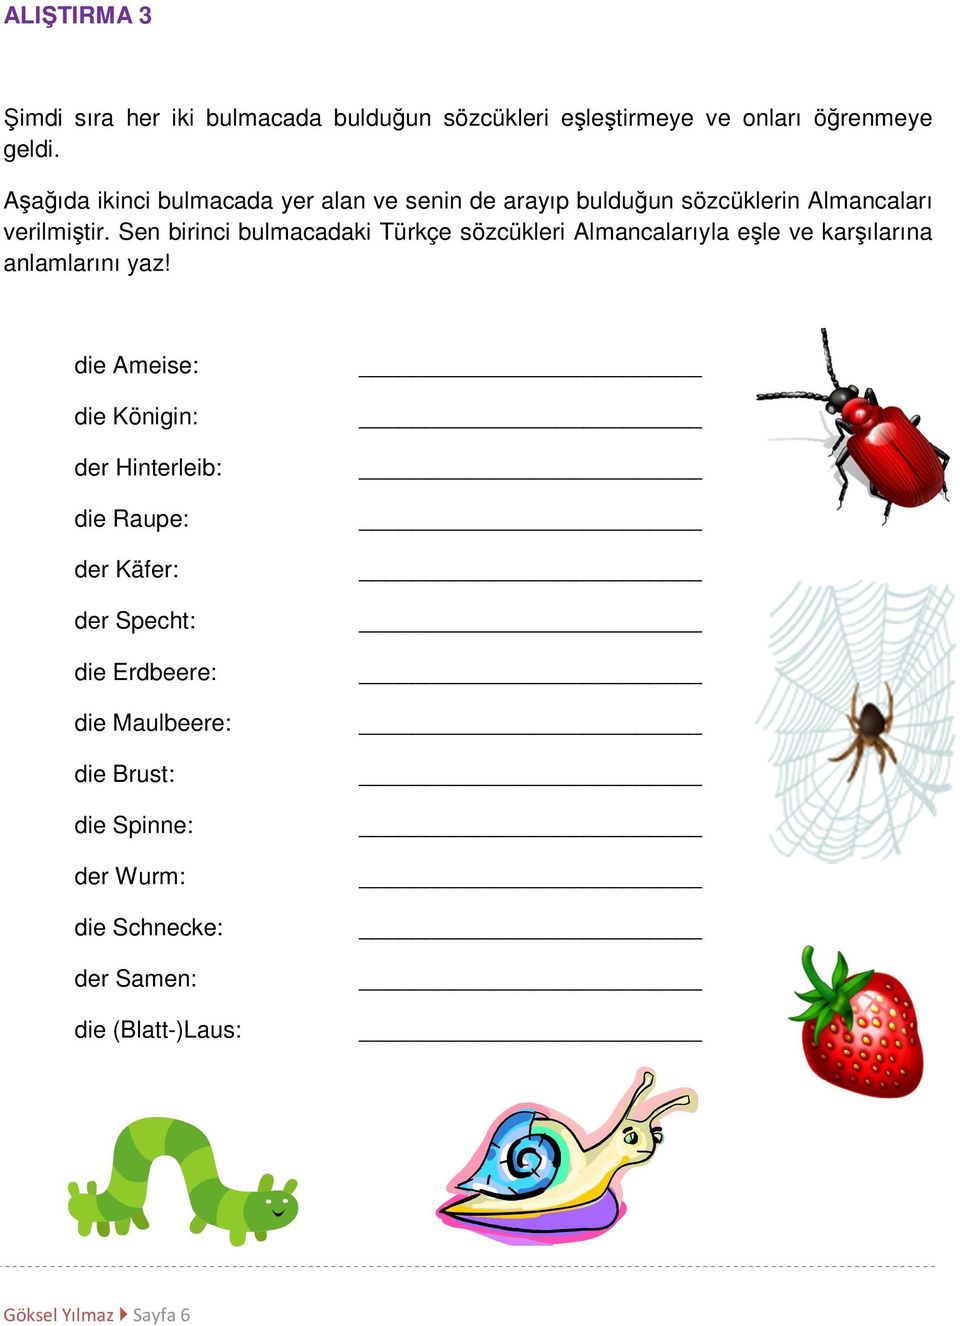 Sen birinci bulmacadaki Türkçe sözcükleri Almancalarıyla eşle ve karşılarına anlamlarını yaz!